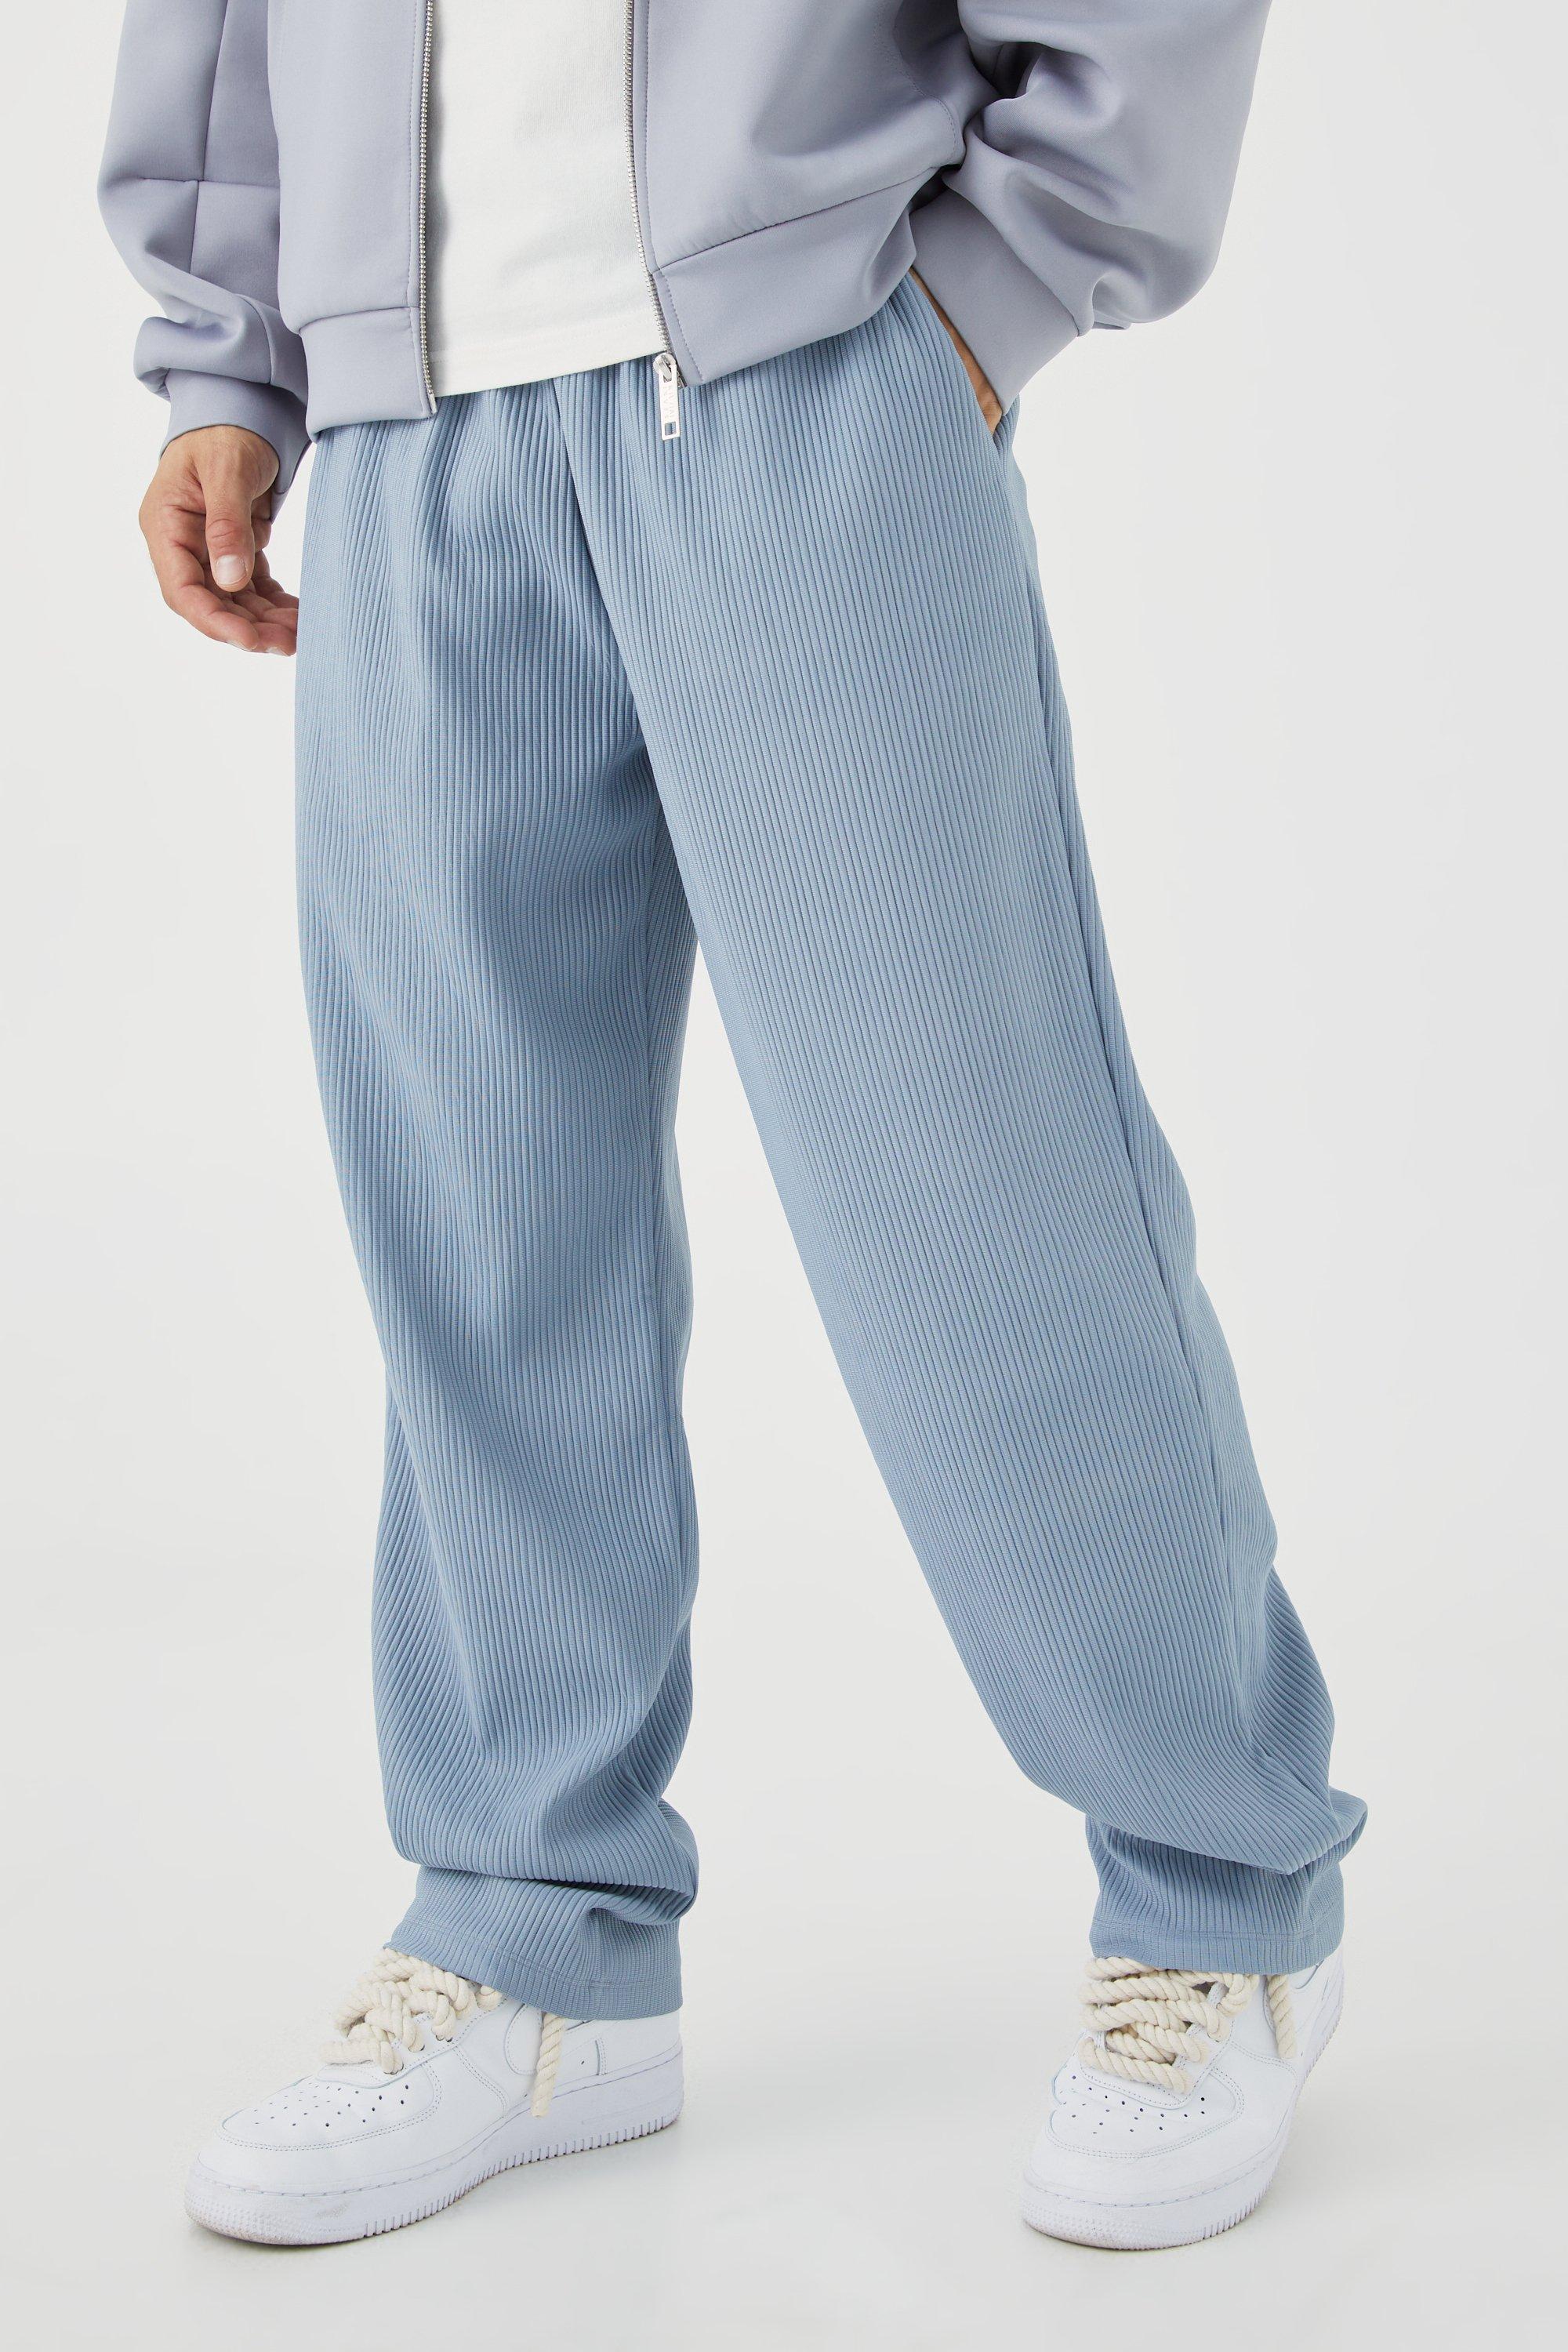 pantalon droit plissé homme - bleu - m, bleu